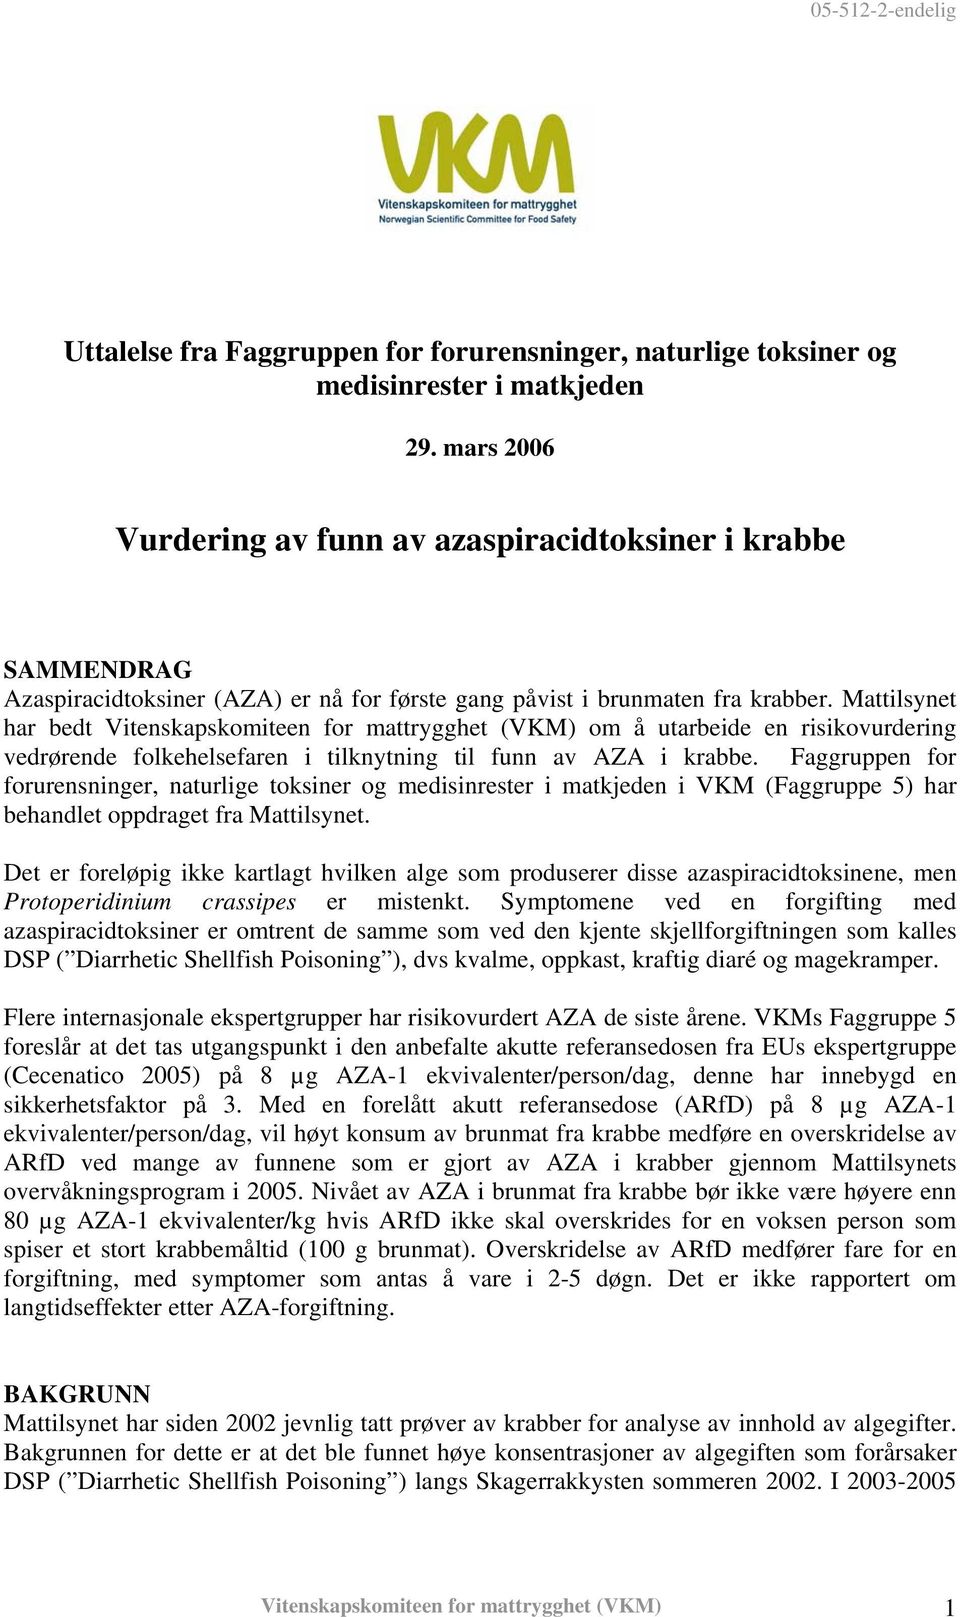 Mattilsynet har bedt Vitenskapskomiteen for mattrygghet (VKM) om å utarbeide en risikovurdering vedrørende folkehelsefaren i tilknytning til funn av AZA i krabbe.